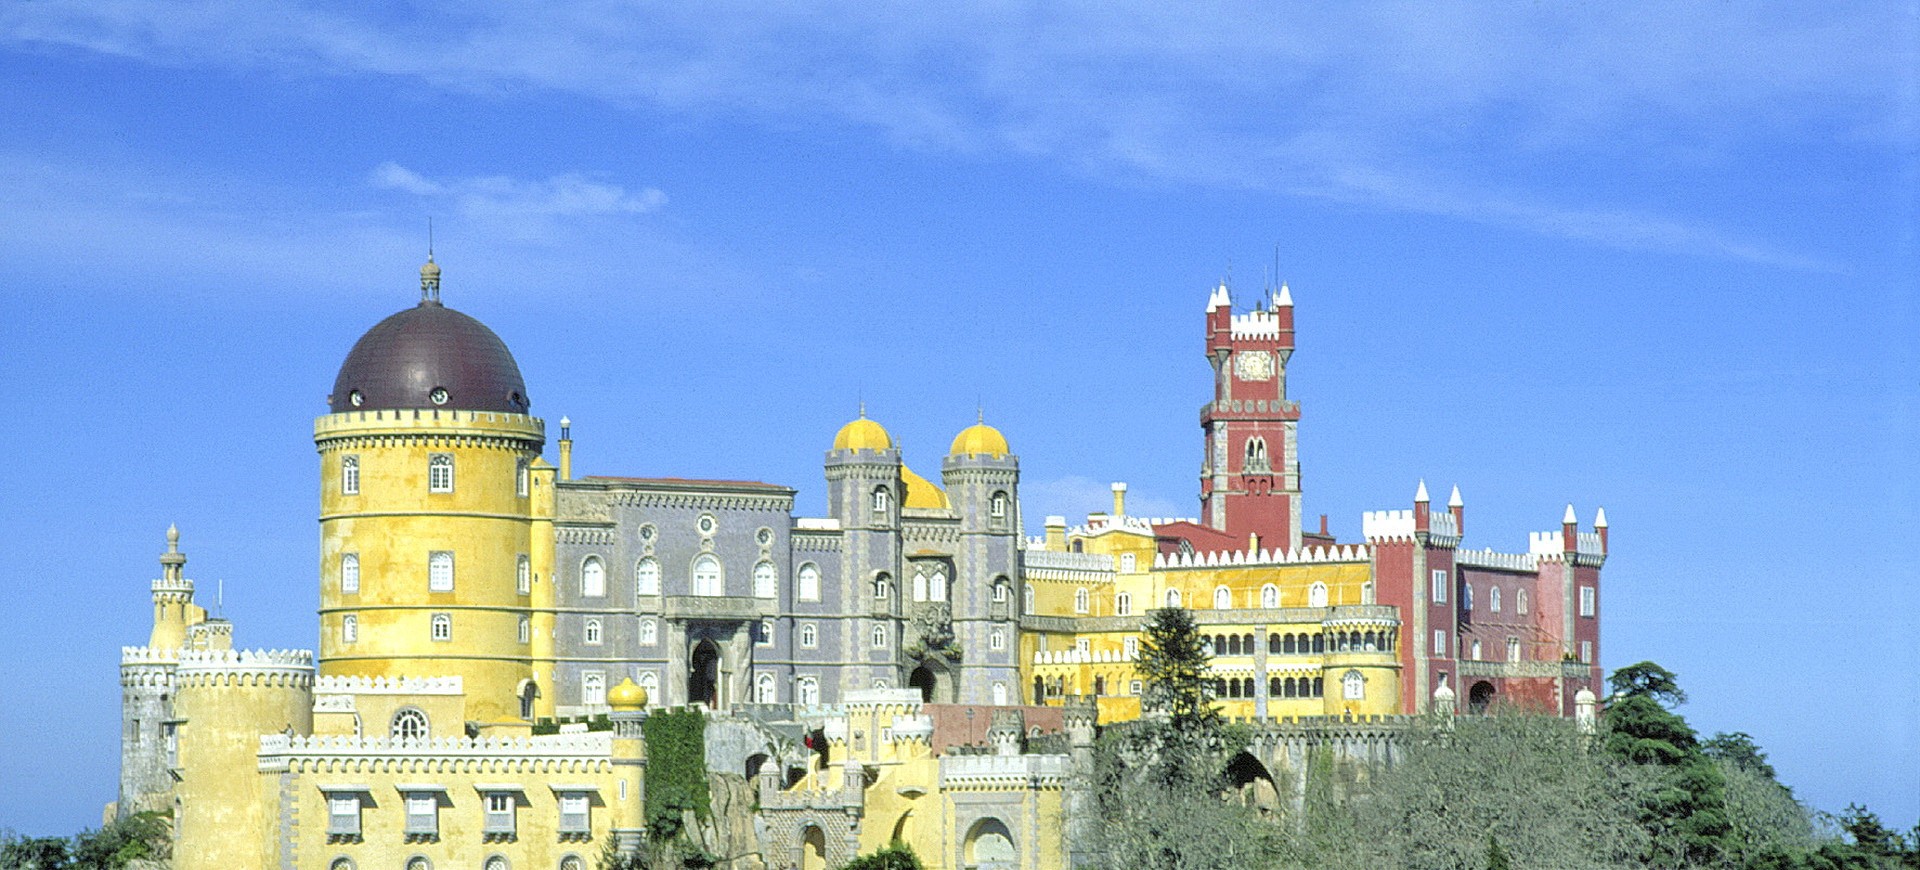 Portugal Sintra Palais de Pena